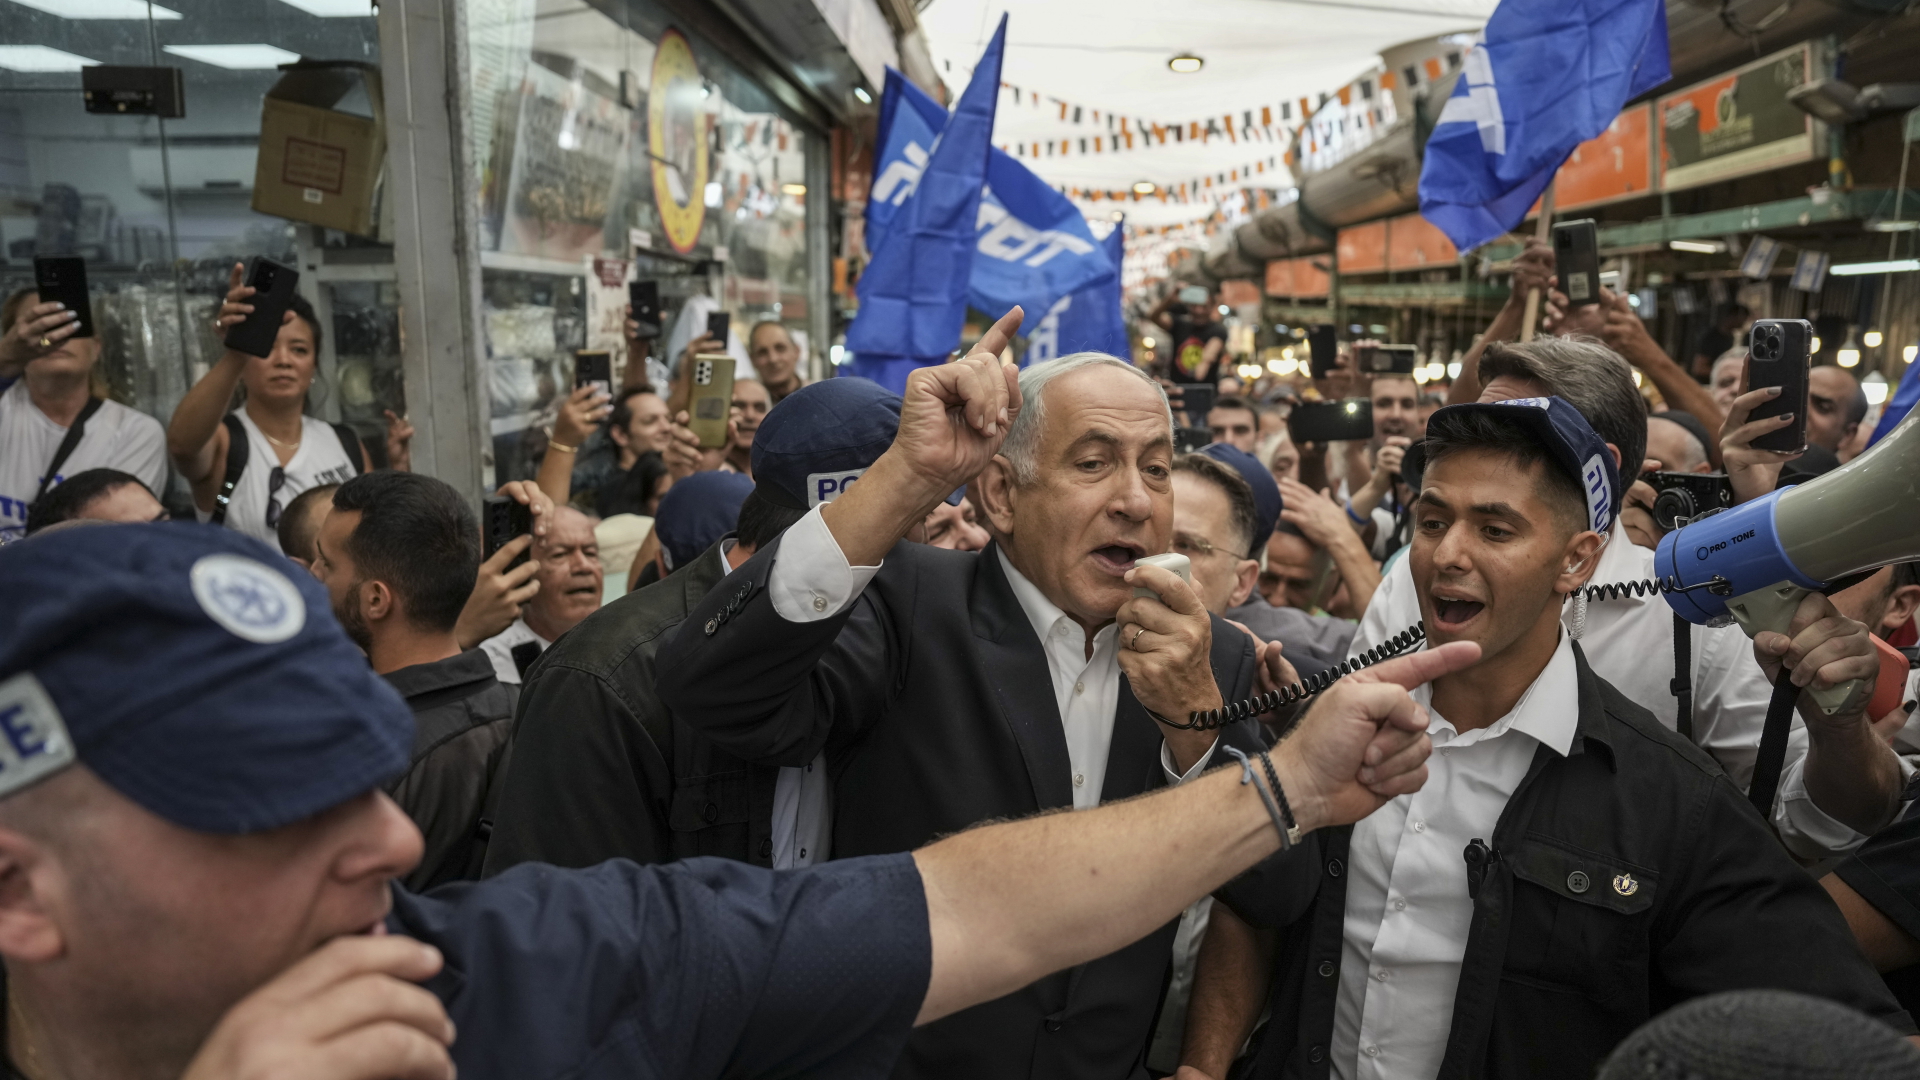 Benjamin Netanyahu spricht während des Wahlkampfs auf einem Markt | dpa